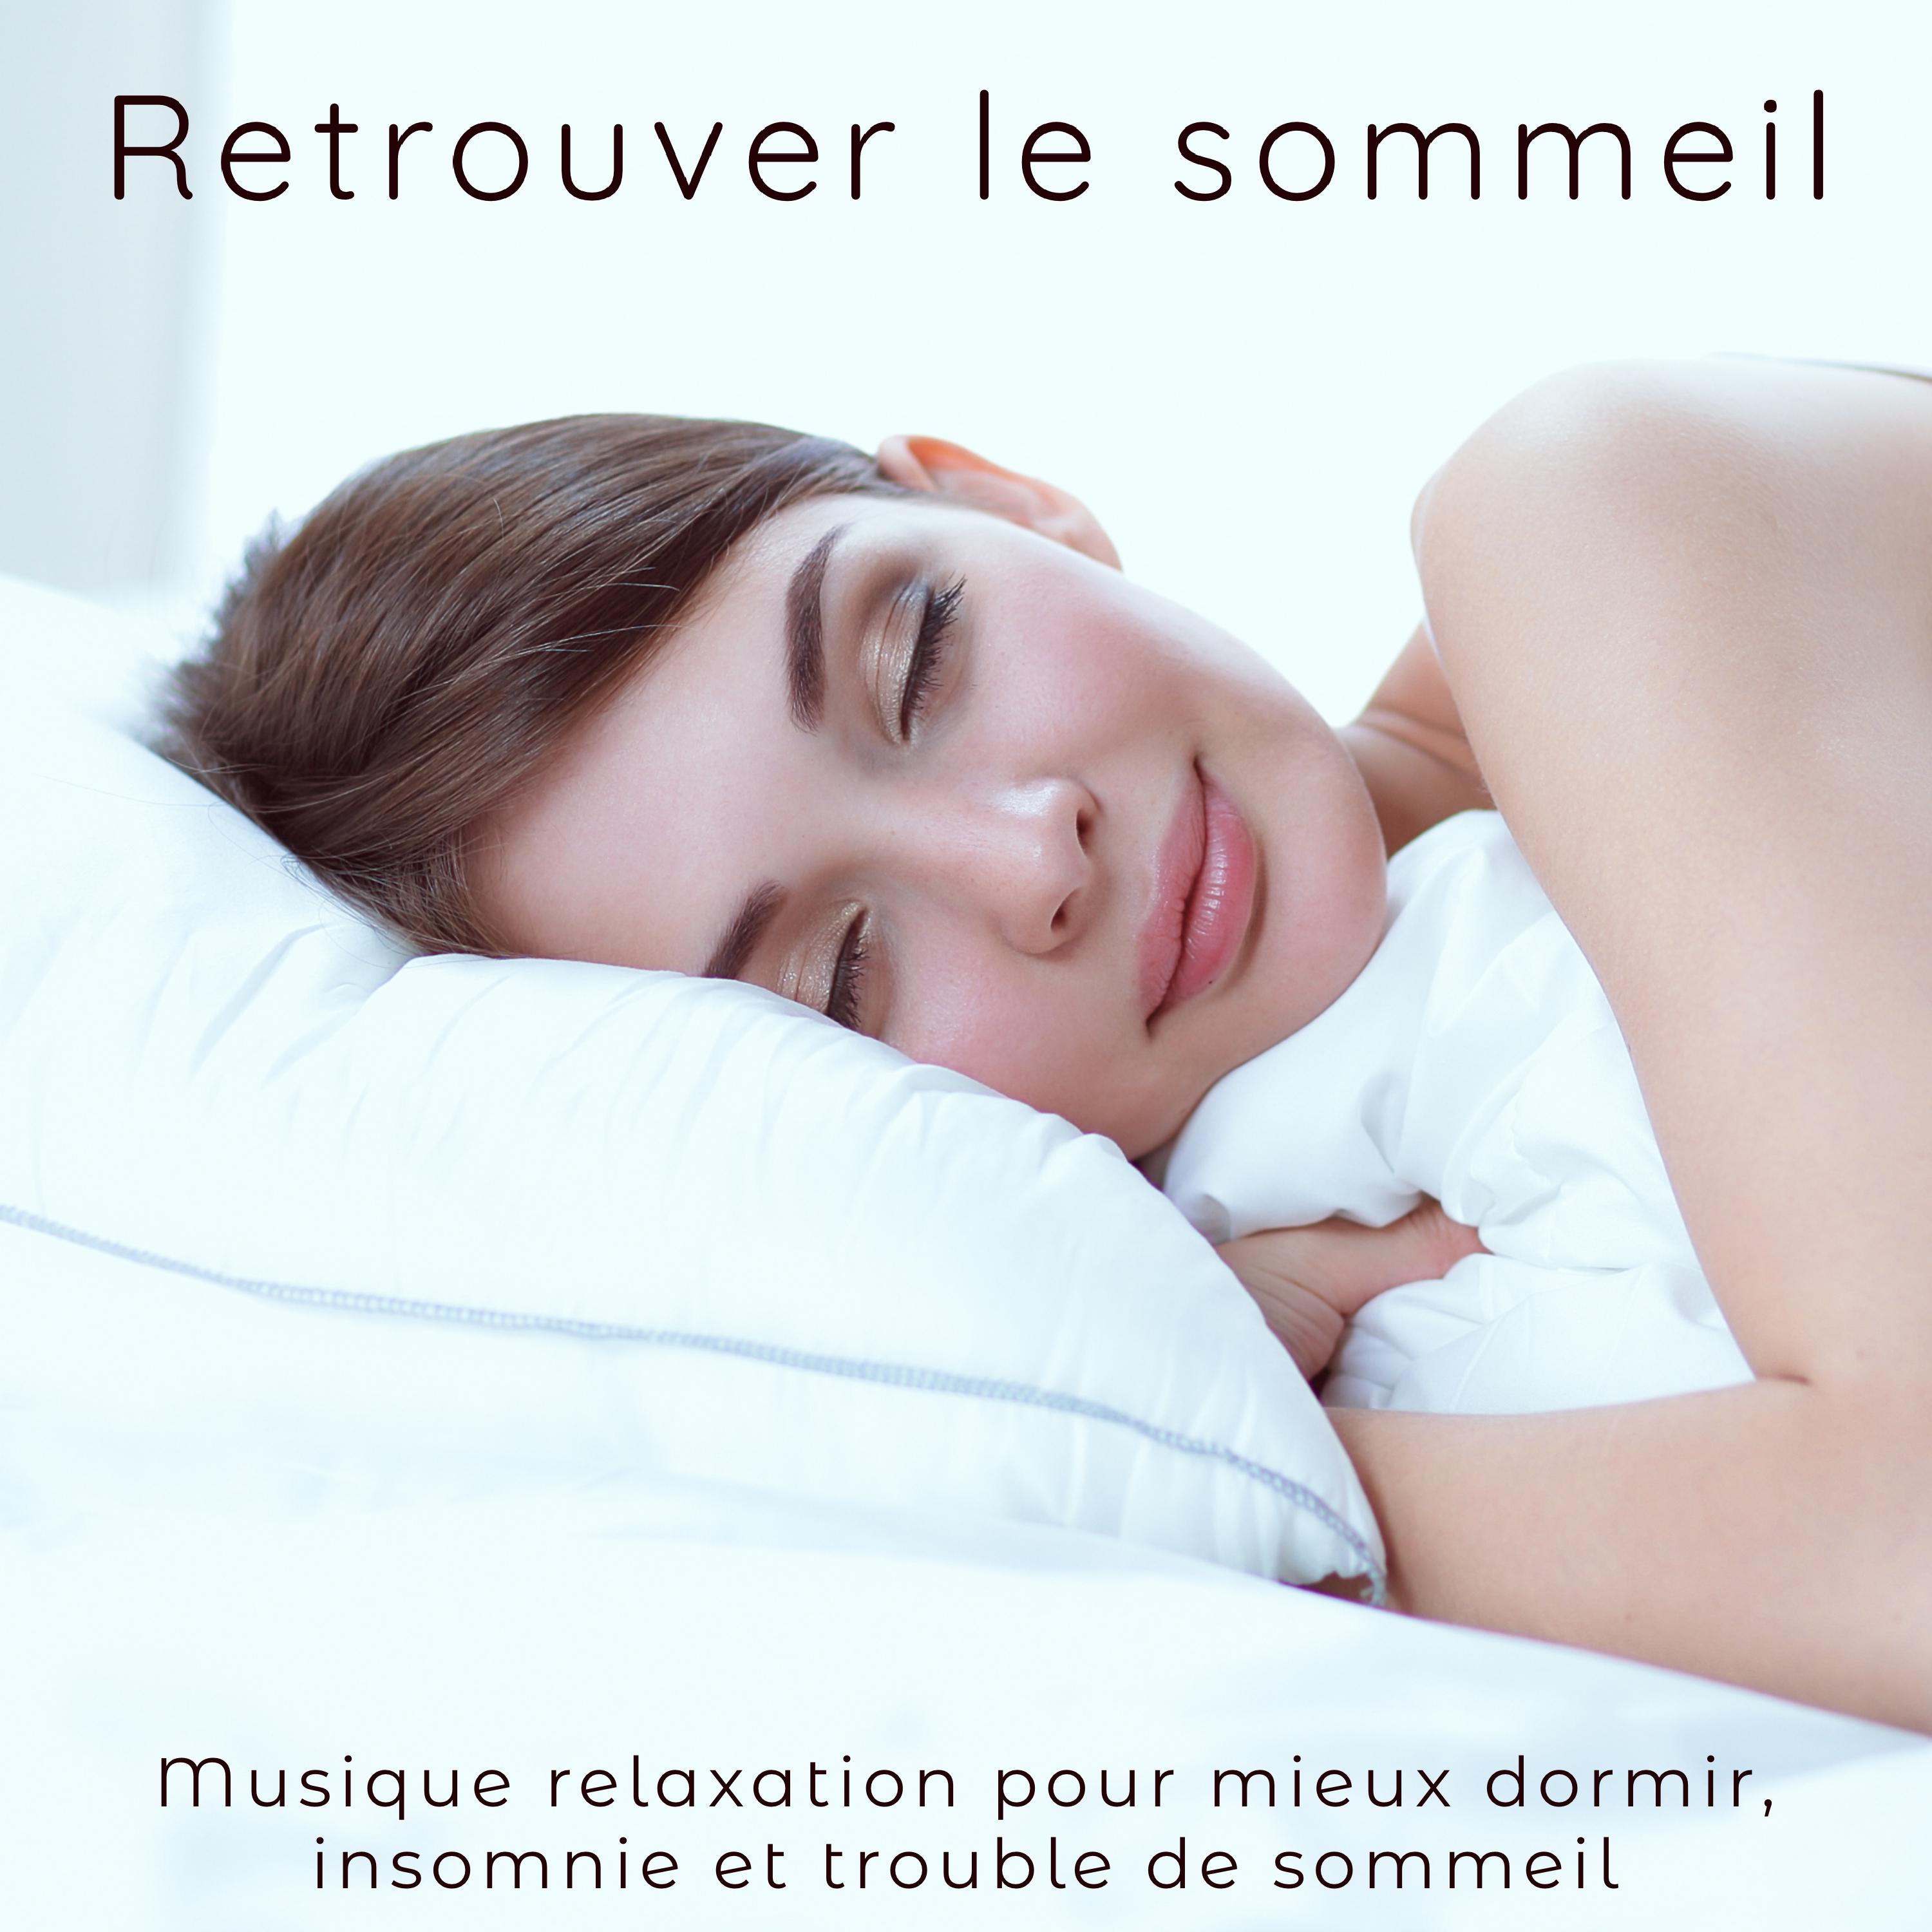 Retrouver le sommeil  Musique relaxation pour mieux dormir, insomnie et trouble de sommeil